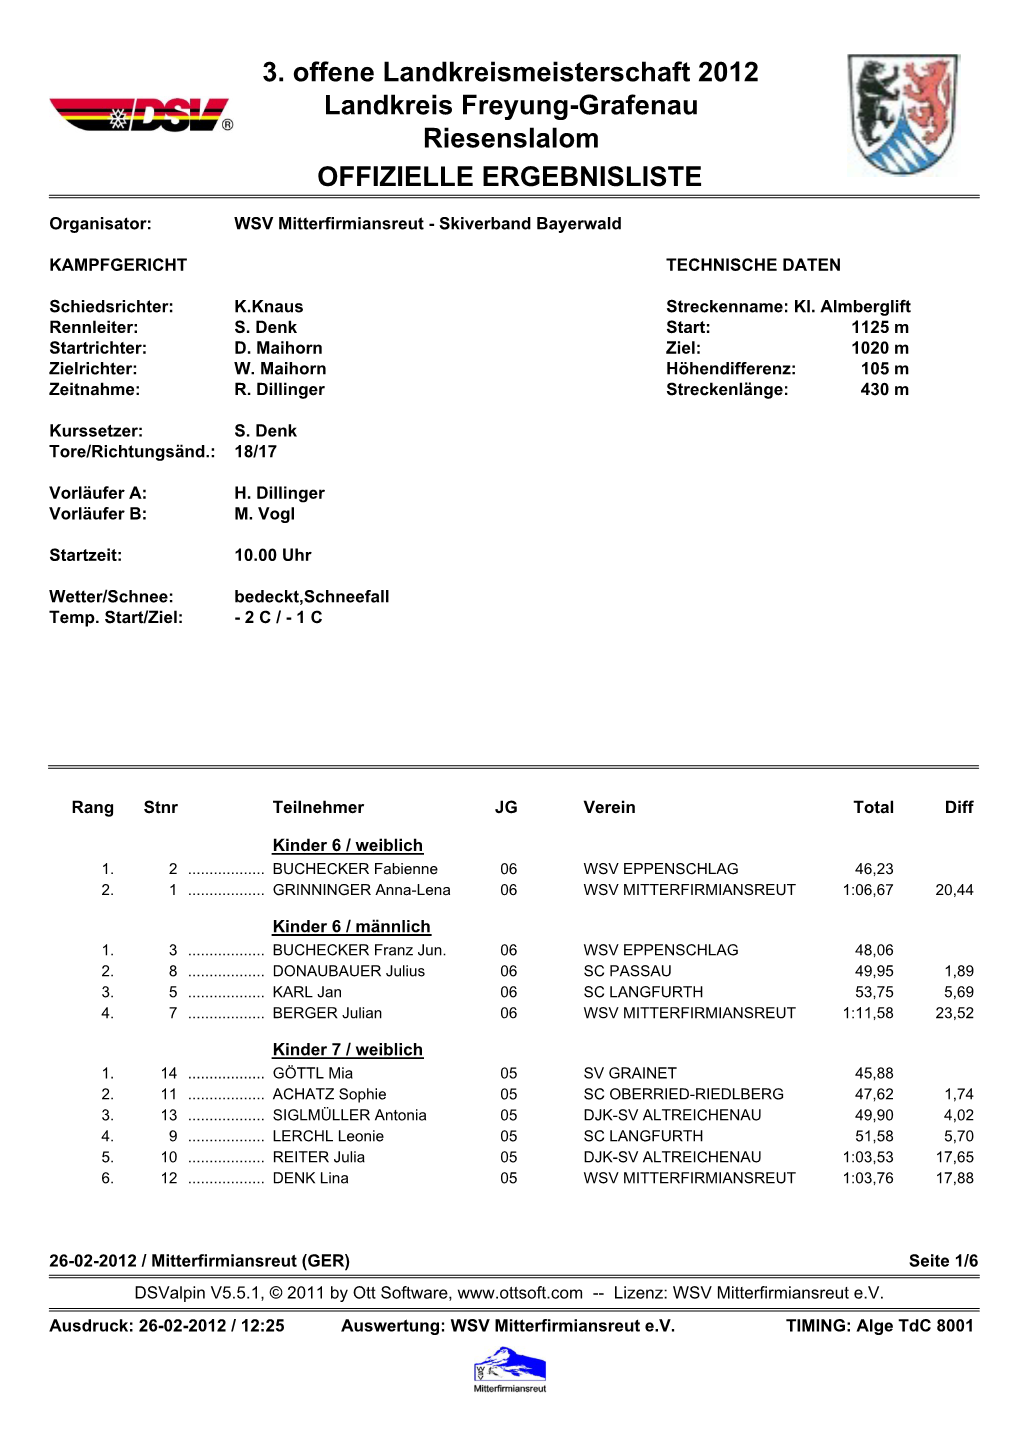 3. Offene Landkreismeisterschaft 2012 Landkreis Freyung-Grafenau Riesenslalom OFFIZIELLE ERGEBNISLISTE